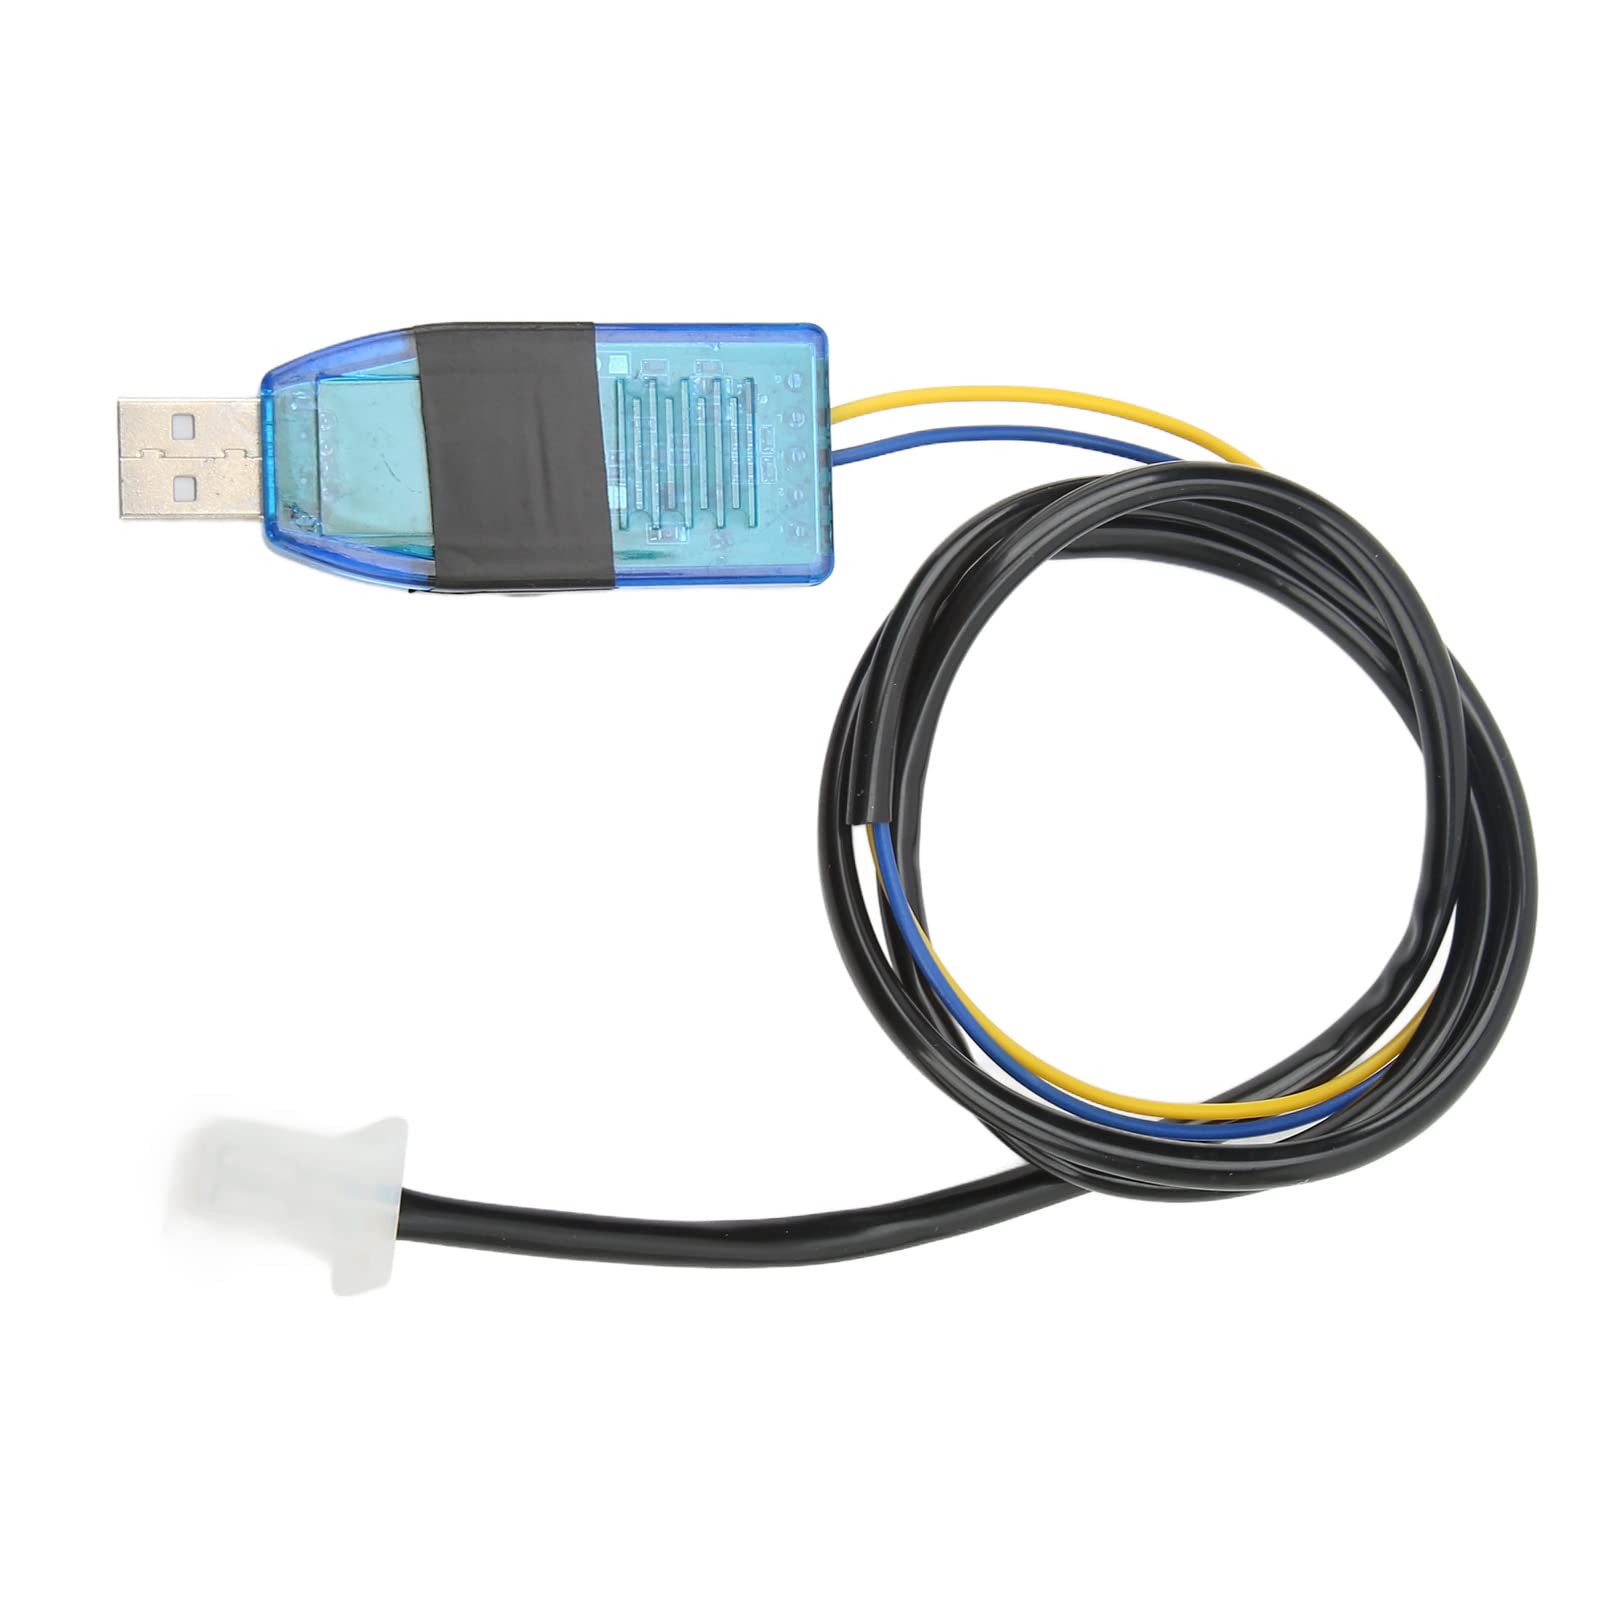 Programmierbares USB-Kabel, Programmierbares USB-Datenkabel für Elektrofahrräder, Baudrate 115200 für VOTOL-Controller EM 1502 2002 2602 von Tbest